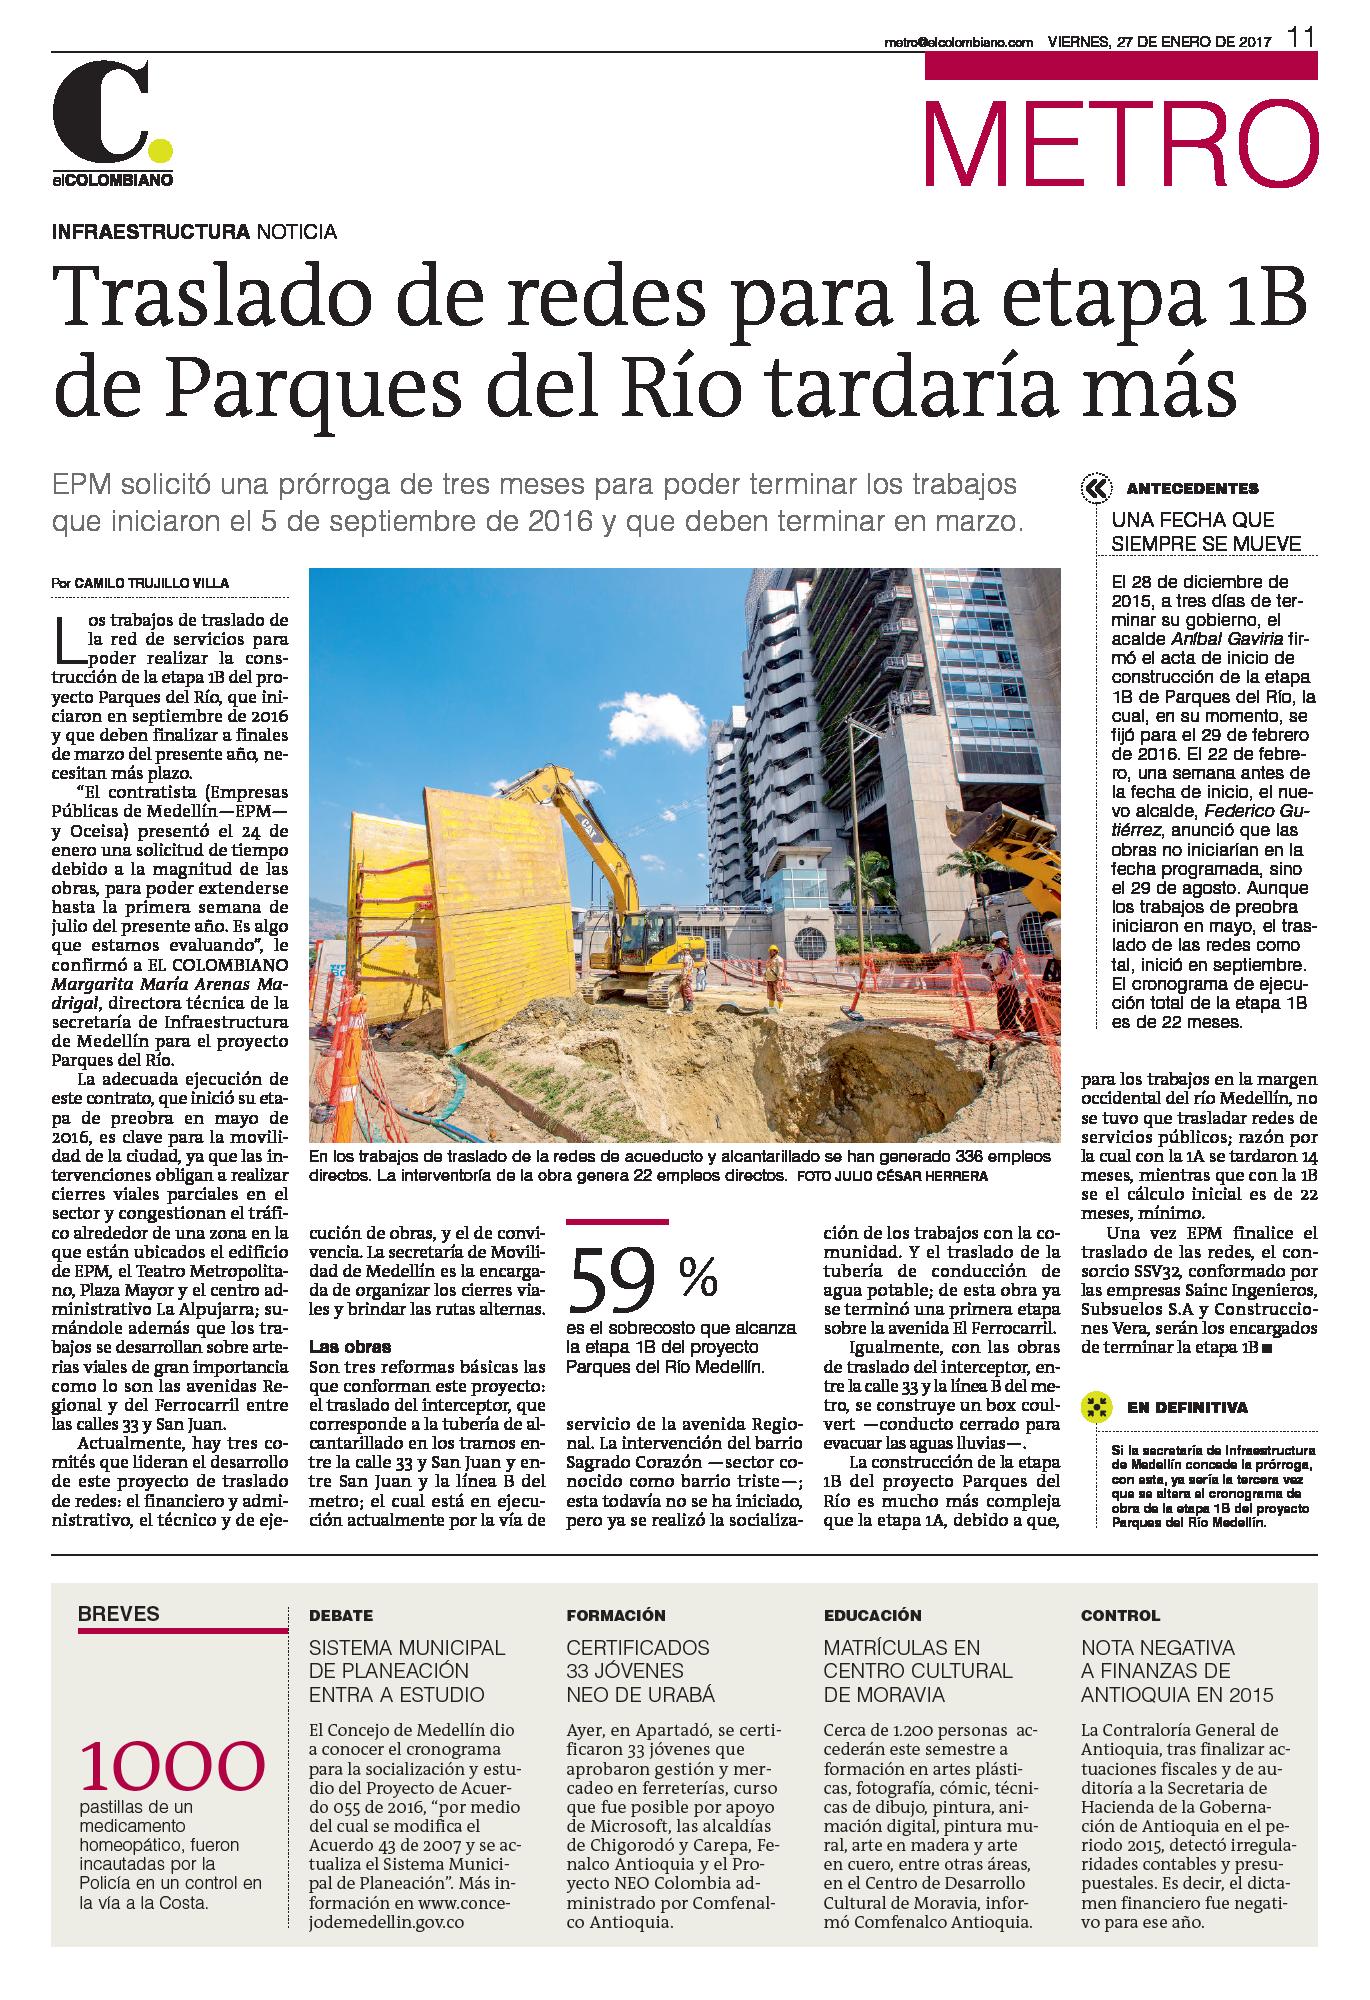 Obras en Parques del Río en Medellín podrían paralizarse